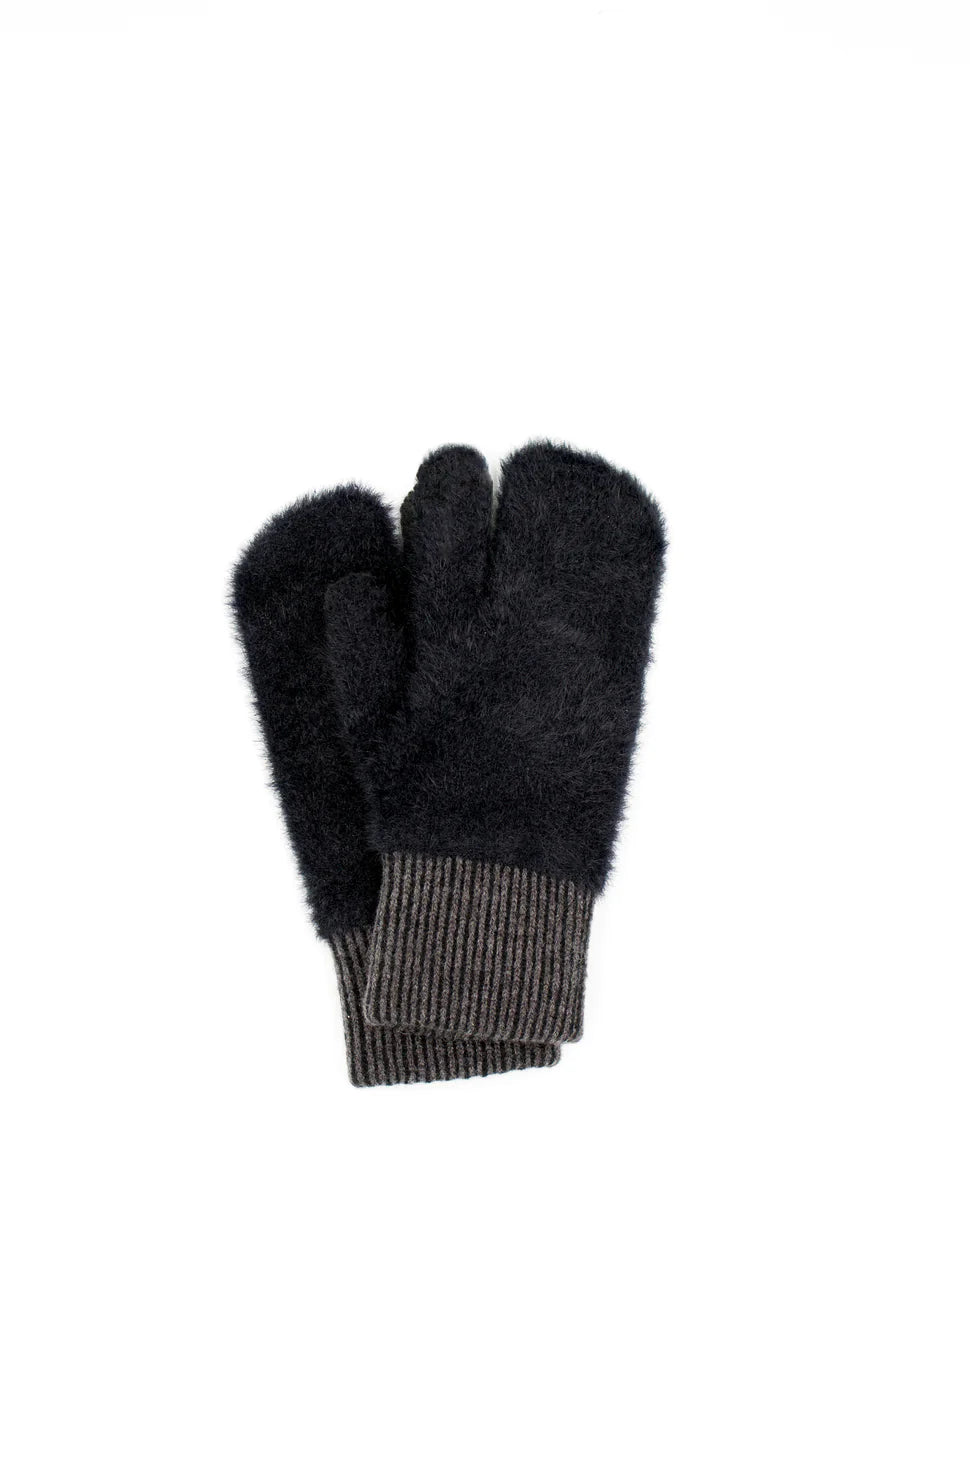 Elpis Evolg Gloves